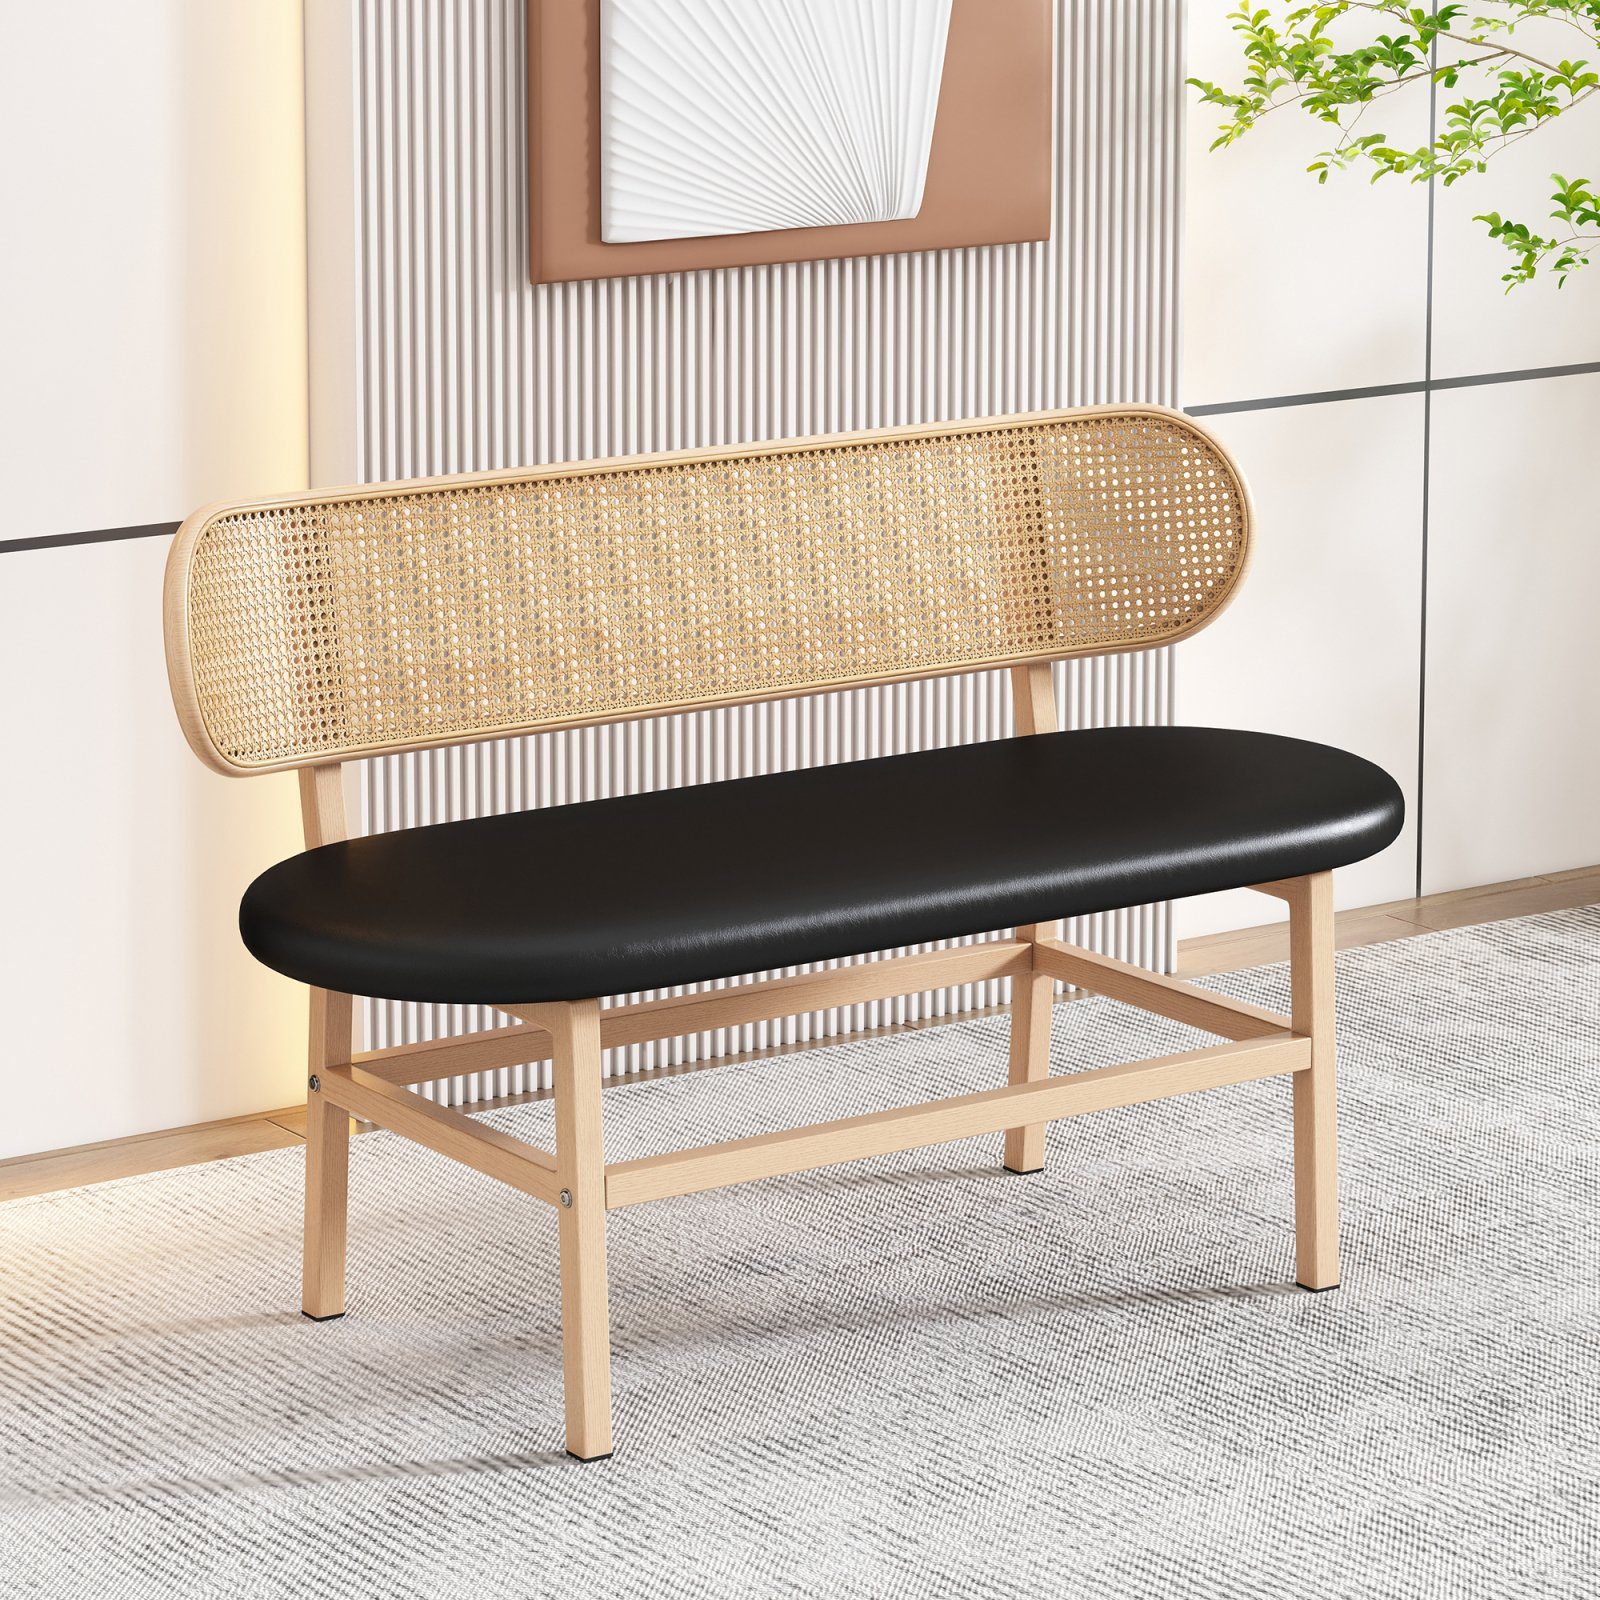 SEEZSSA Esszimmerstuhl Komfortables ovale Doppelstühle Sitzkissen, Freizeitbänke Schwarz mit Moderne Rattan-Rückenbank, Wohnzimmer, für 120x75cm